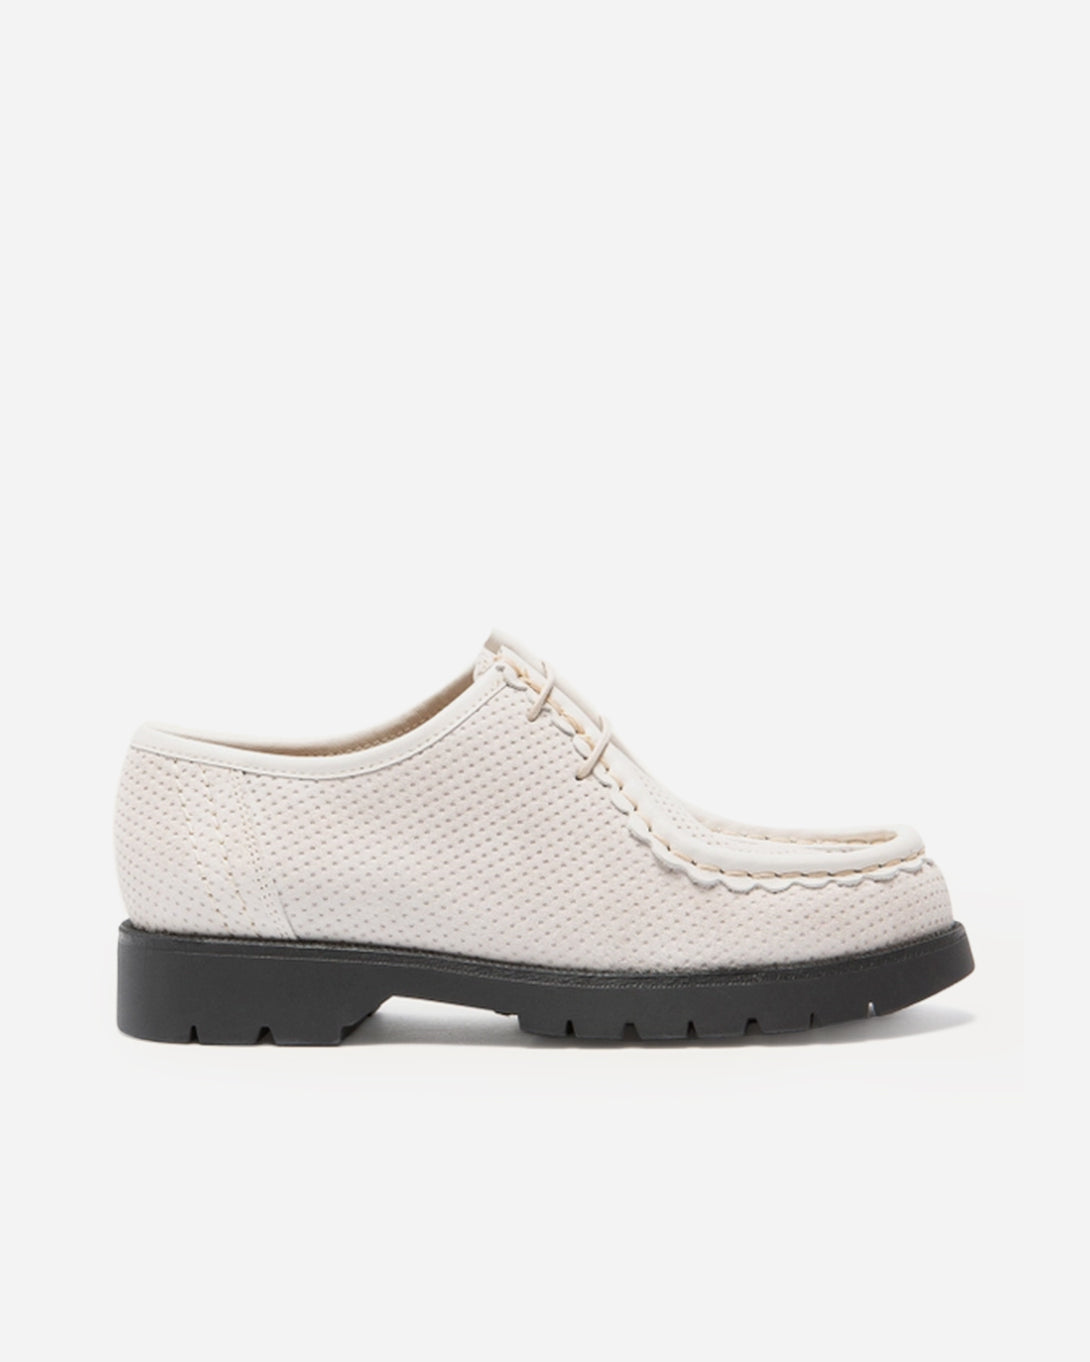 Blanc Padror V Dots Kleman White Tyrolean French Shoewear